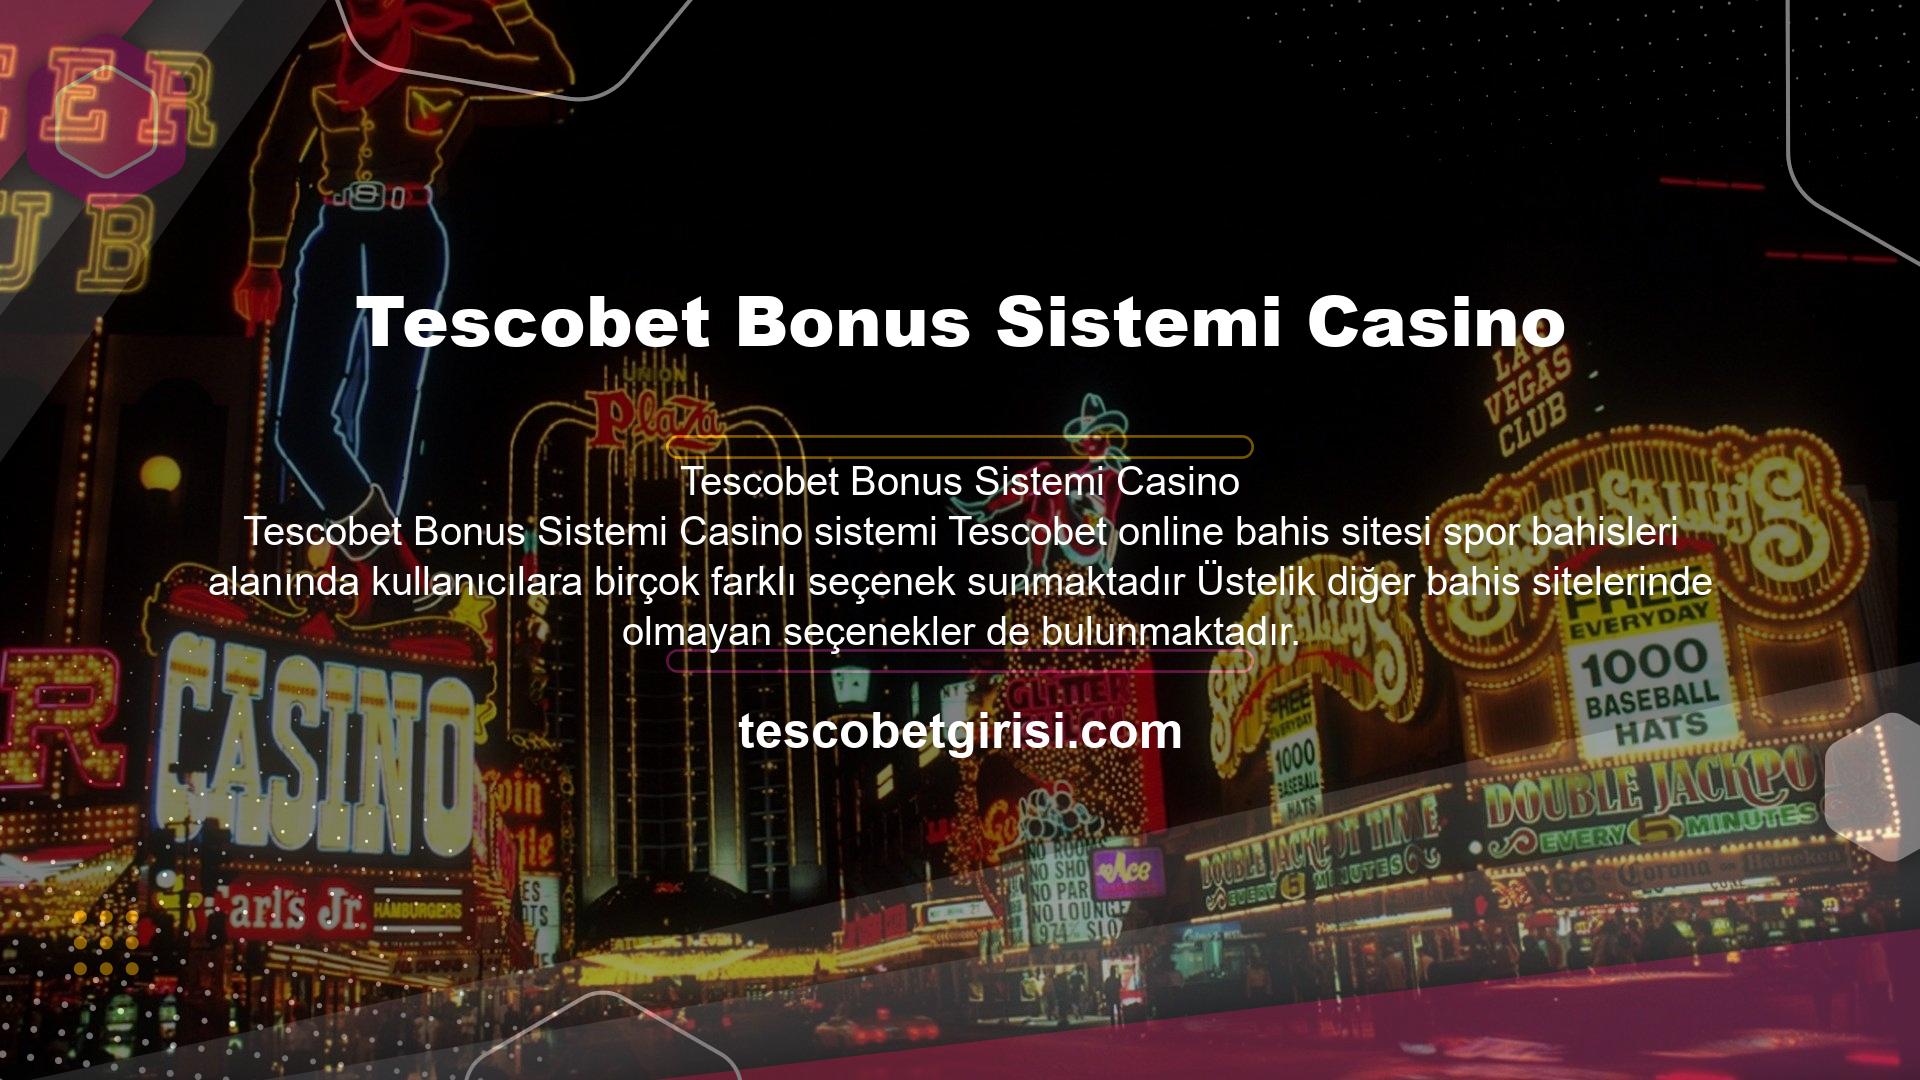 Tescobet bonus sistemi Casino sisteminin şubeleri Tenis ve masa tenisi gibi farklı spor dallarında bahis oynamanın yanı sıra casino alanında farklı bahis branşları da bulunmaktadır